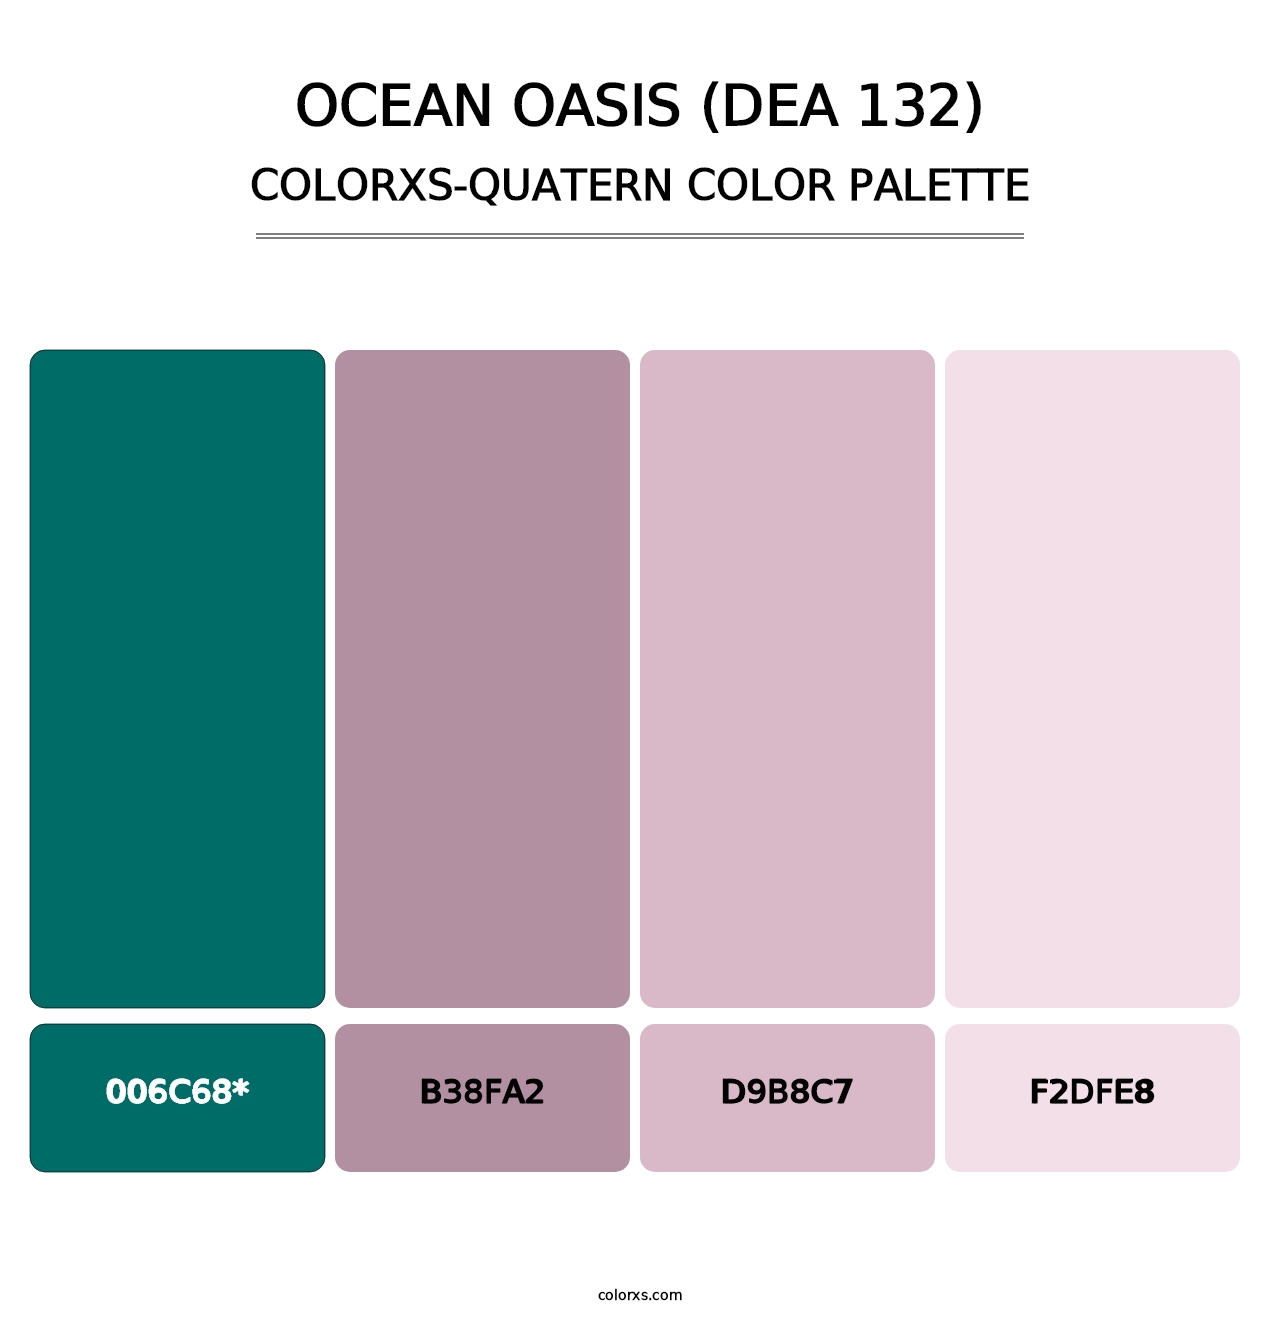 Ocean Oasis (DEA 132) - Colorxs Quatern Palette